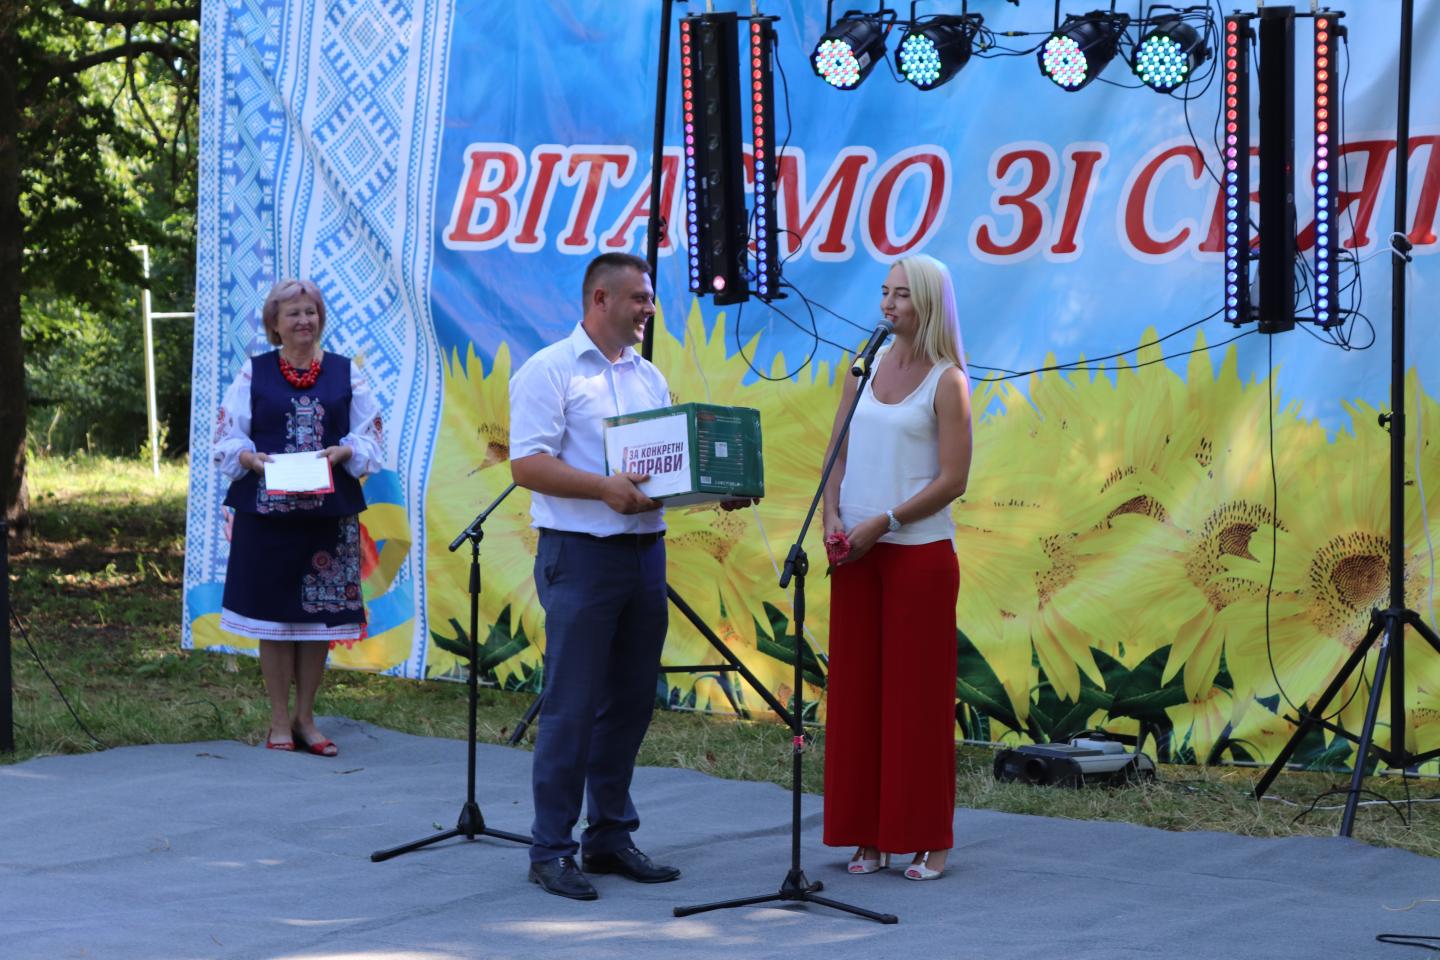 http://dunrada.gov.ua/uploadfile/archive_news/2021/08/01/2021-08-01_193/images/images-41133.jpg